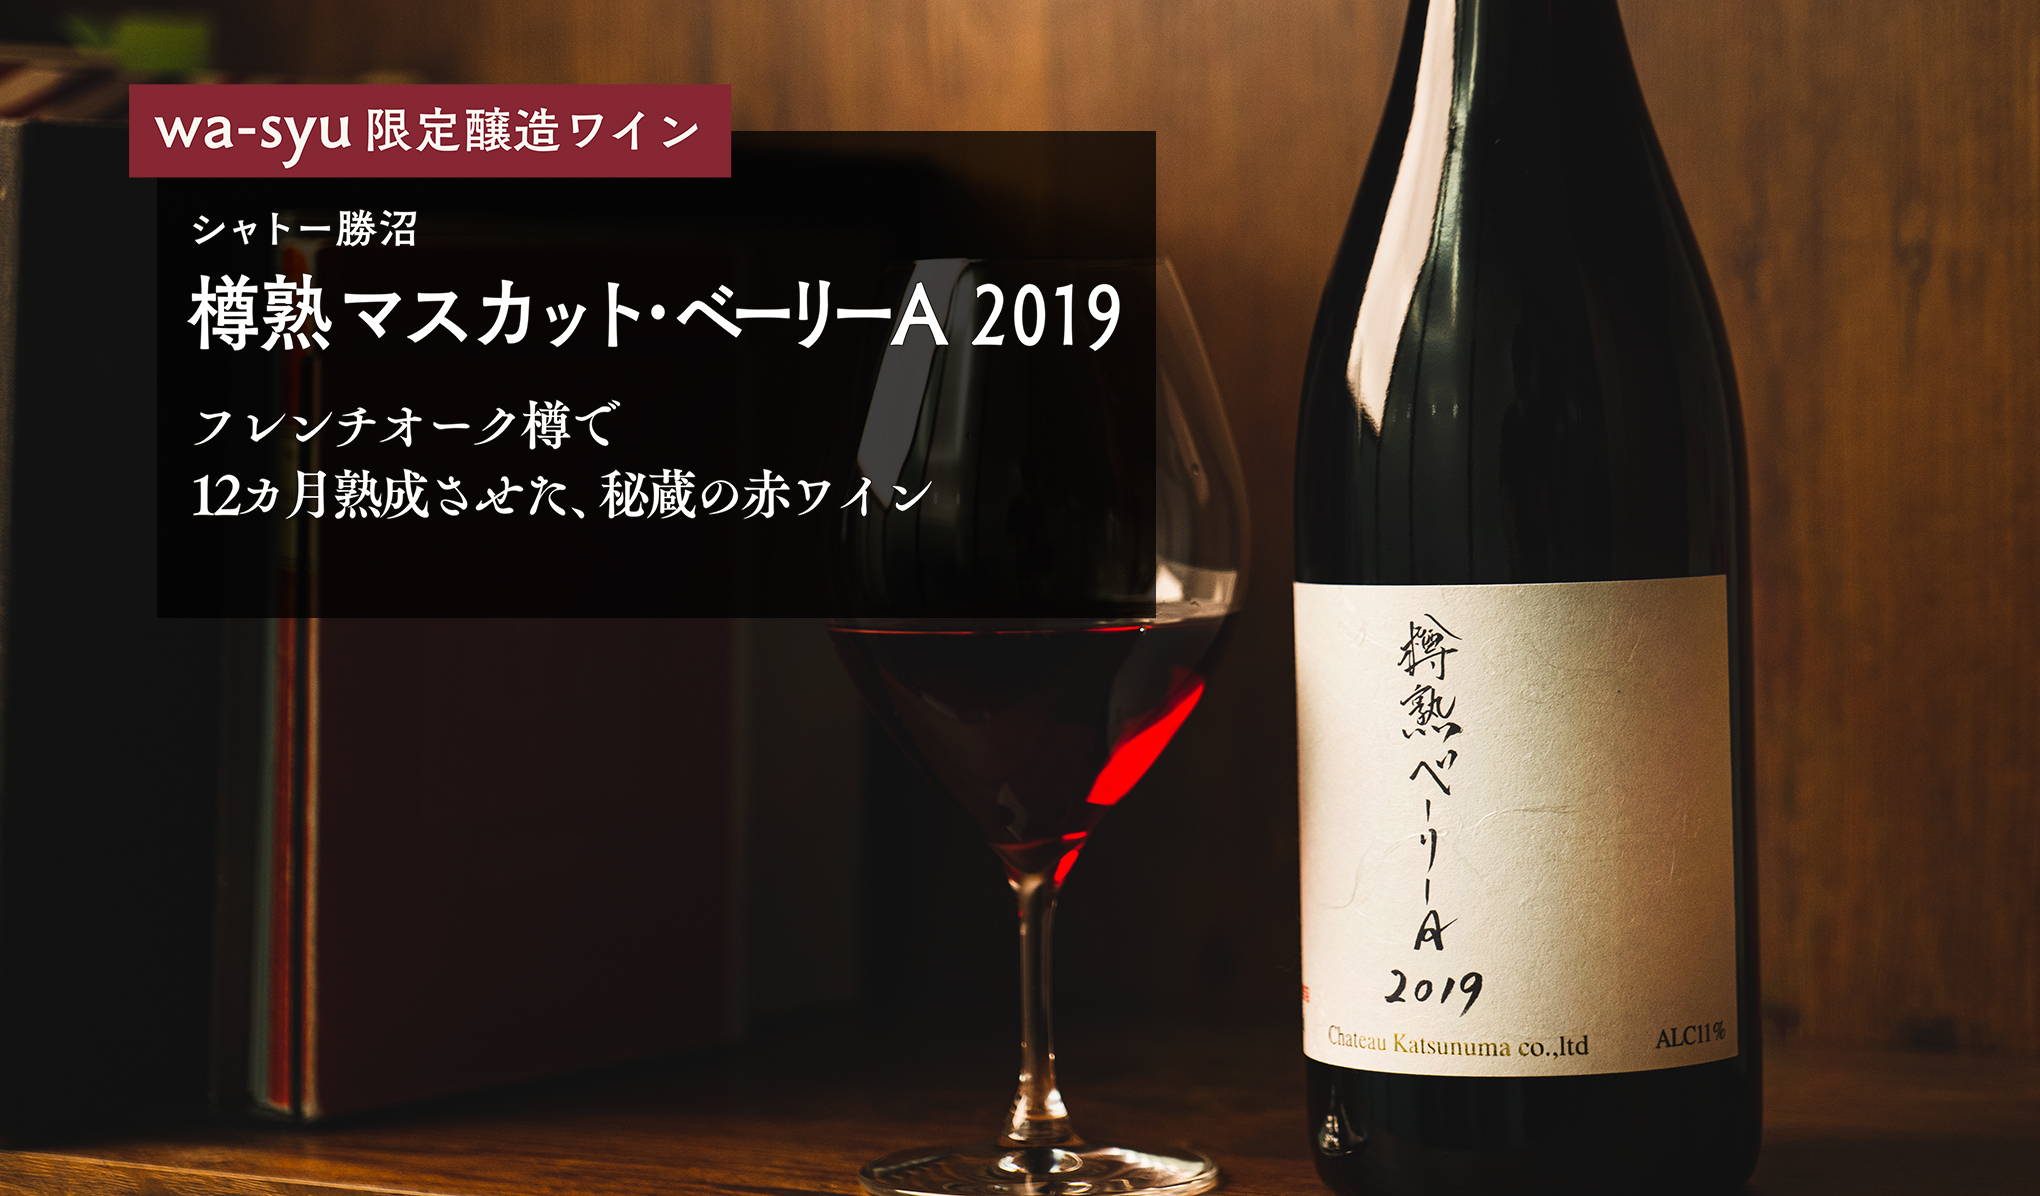 wa-syu限定醸造ワイン第三弾、『樽熟 マスカット・ベーリーA 2019』。フレンチオーク樽で12カ月熟成させた、秘蔵の赤ワイン